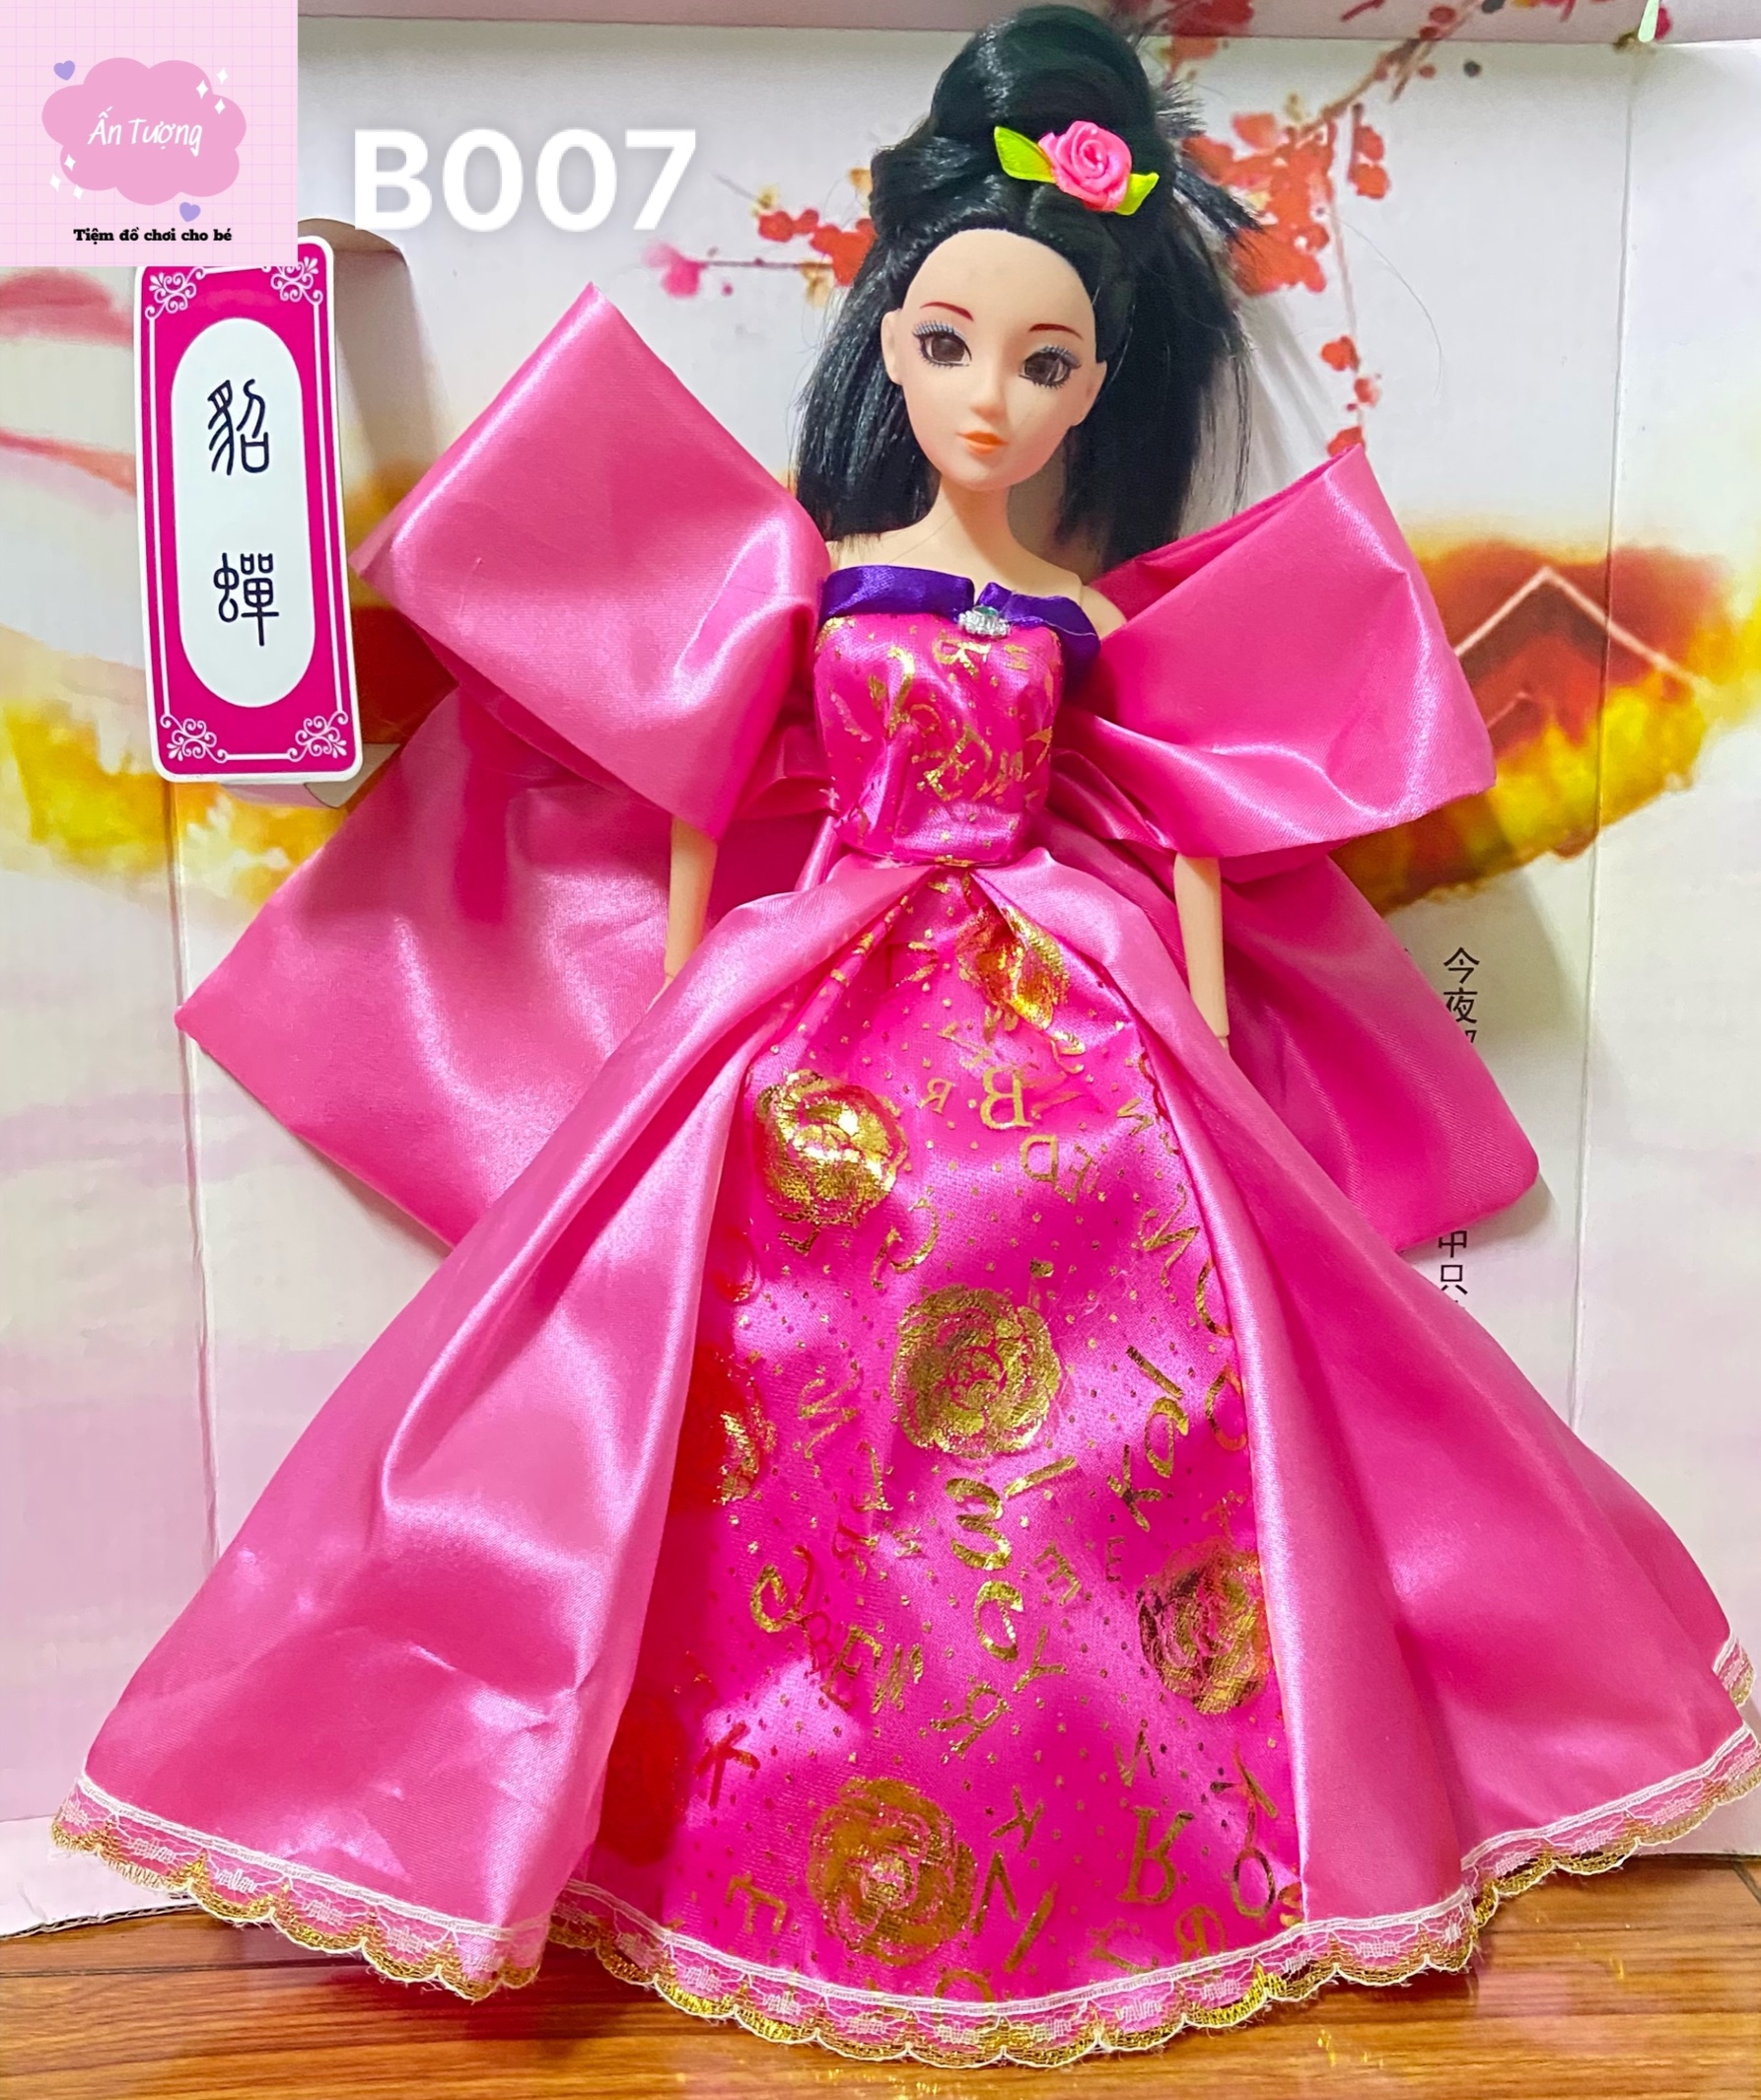 Đồ chơi bé gái - Đồ chơi búp bê- Hộp  búp bê Barbie, búp bê BJD công chúa cổ trang váy hồng cao cấp